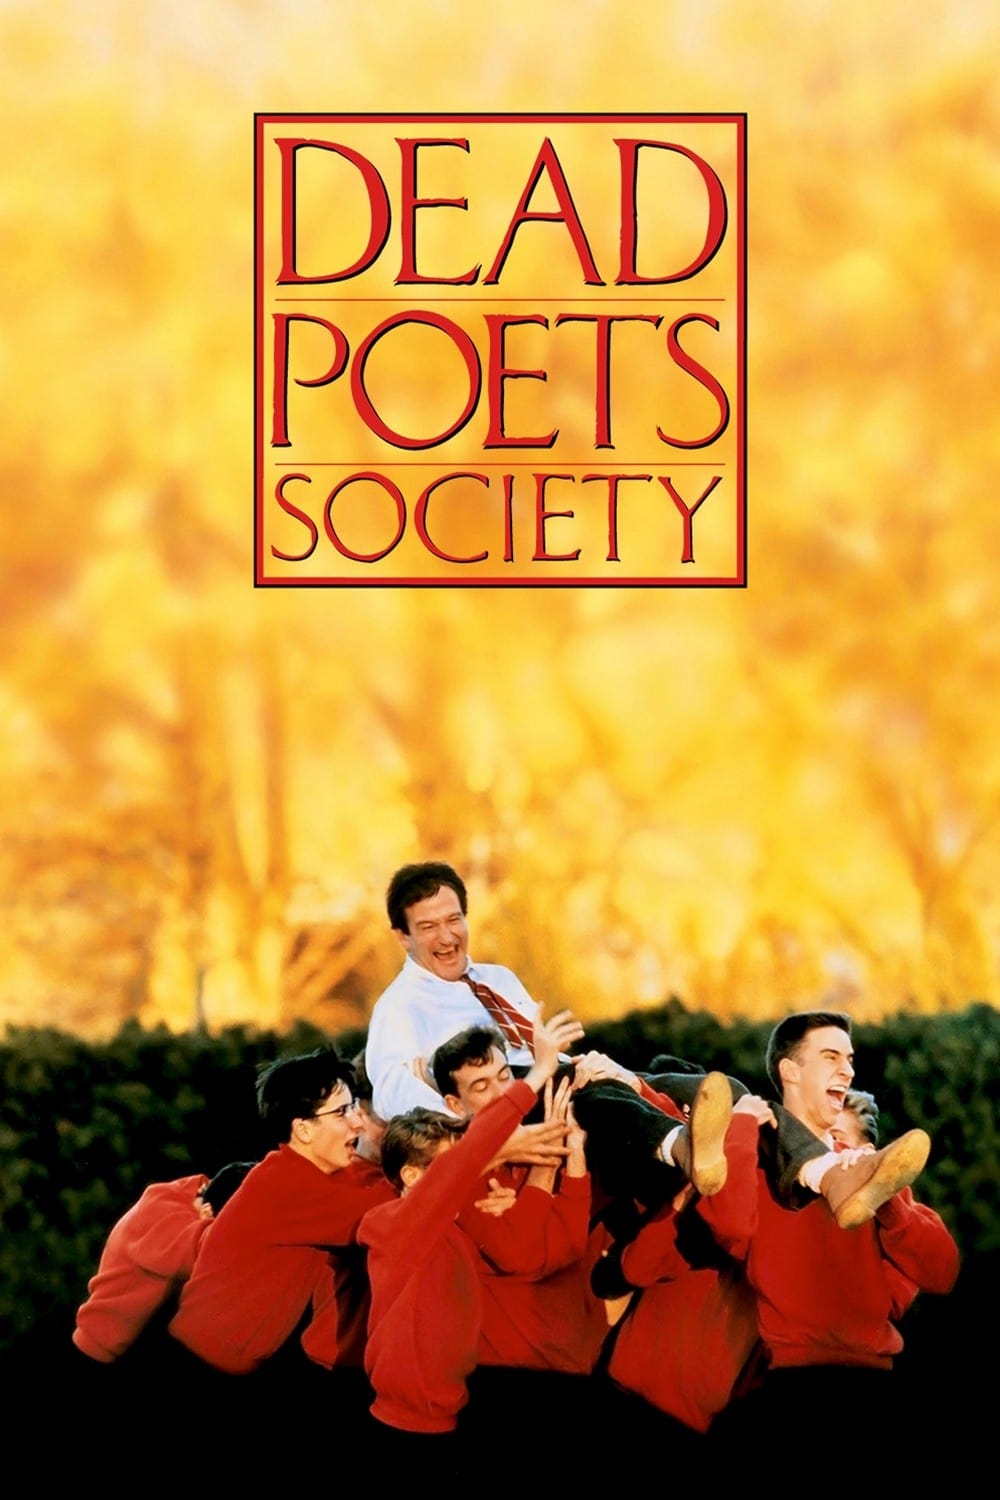 La sociedad de los poetas muertos (1989) 1080p Latino